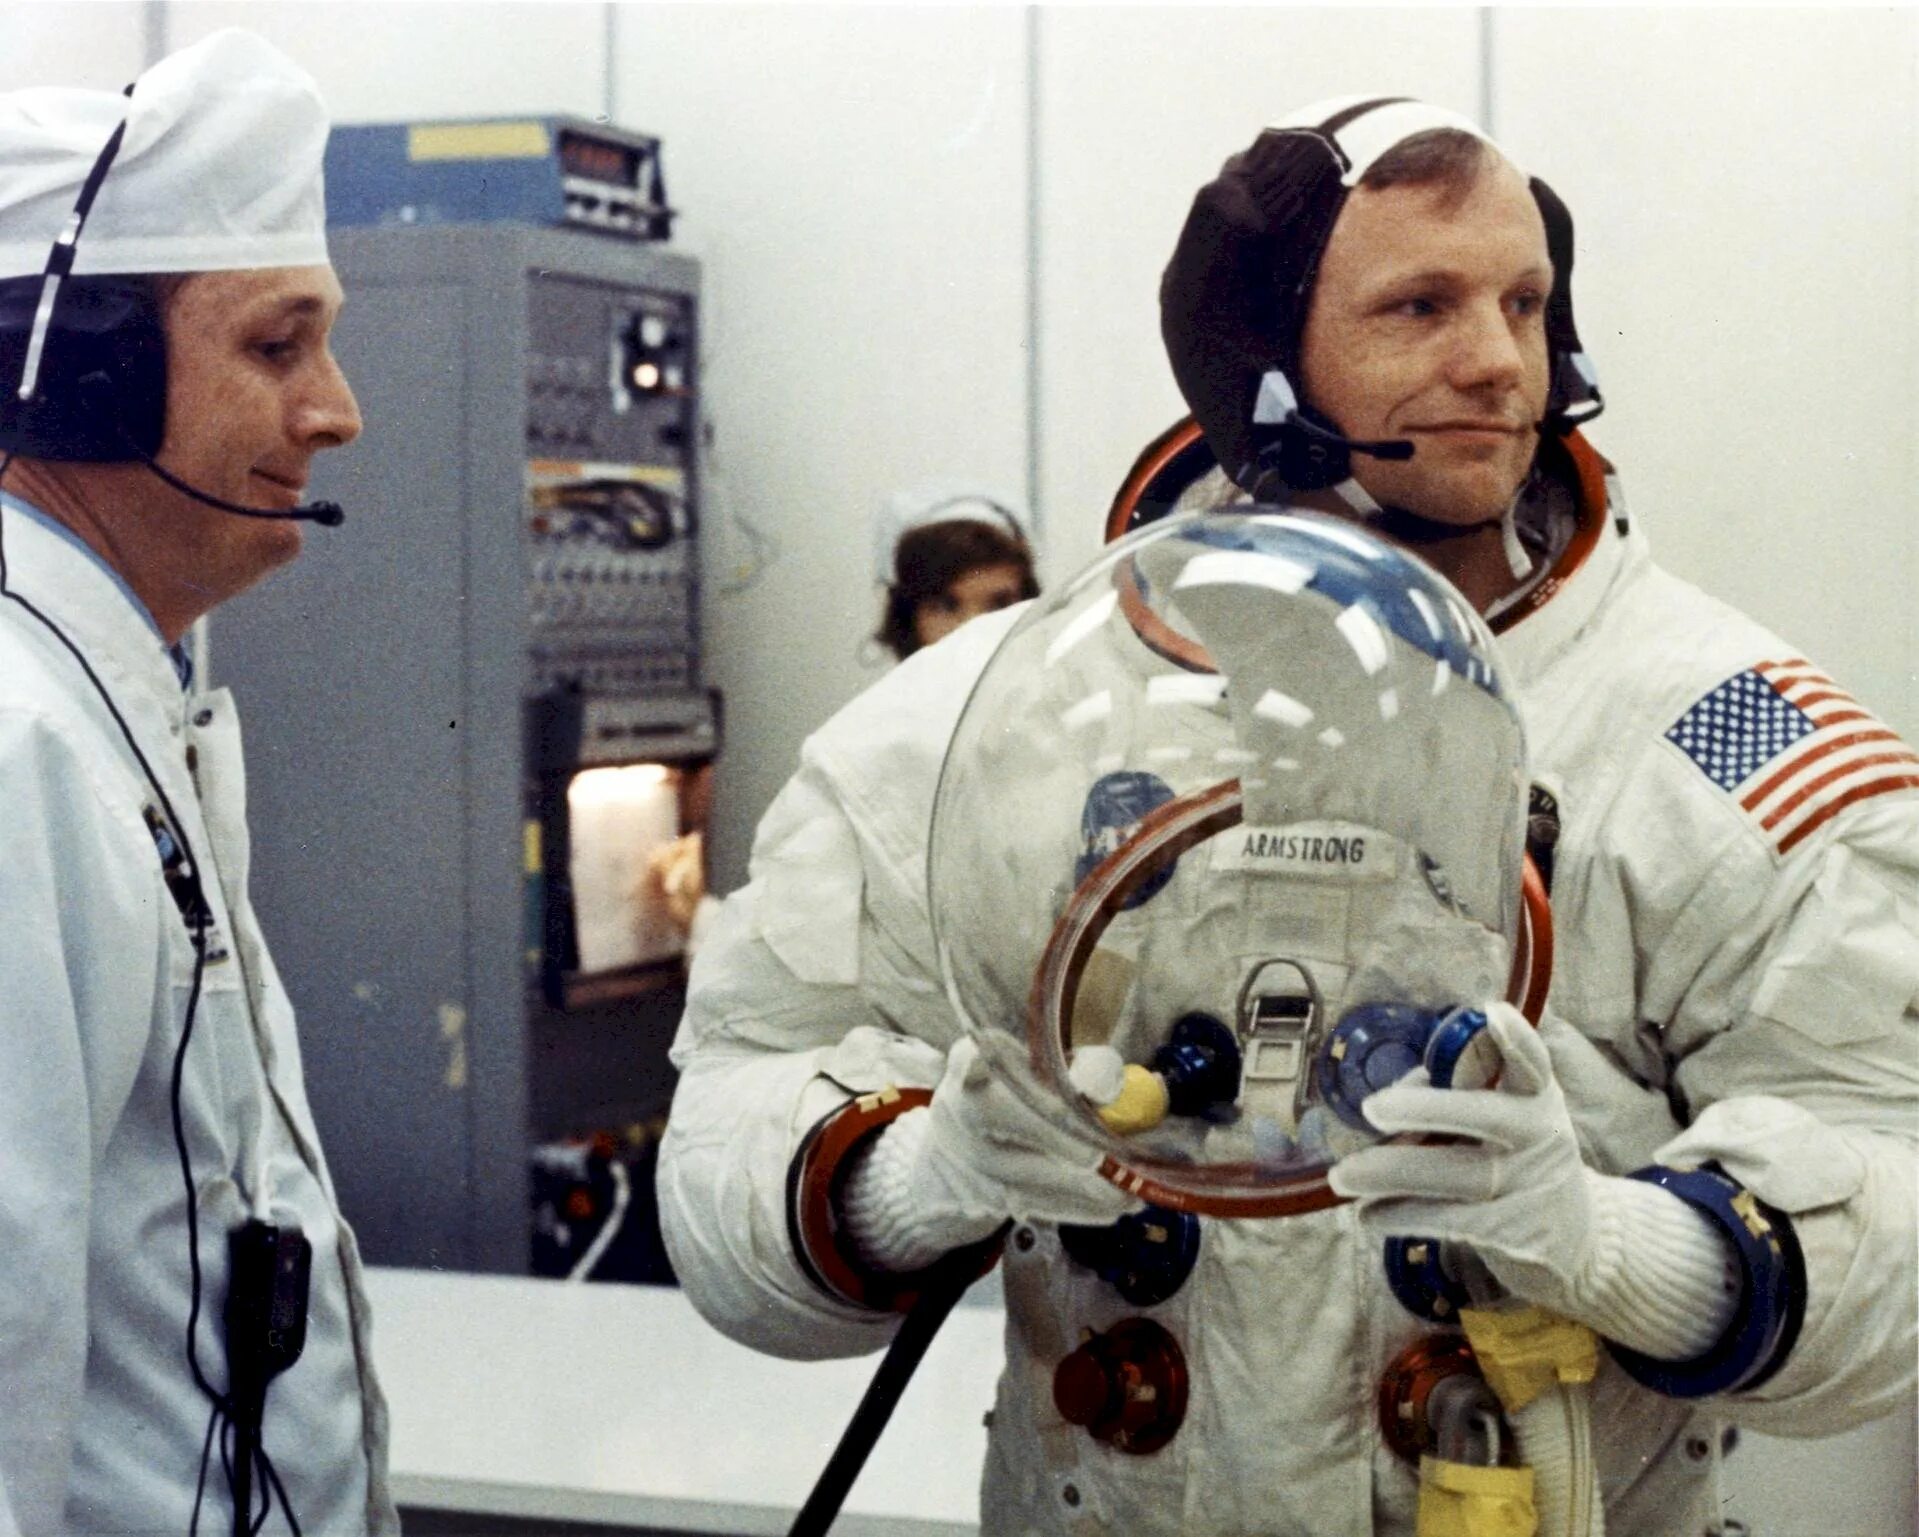 Скафандры для полета на луну изготавливали лучшие. Аполлон 11 Армстронг.